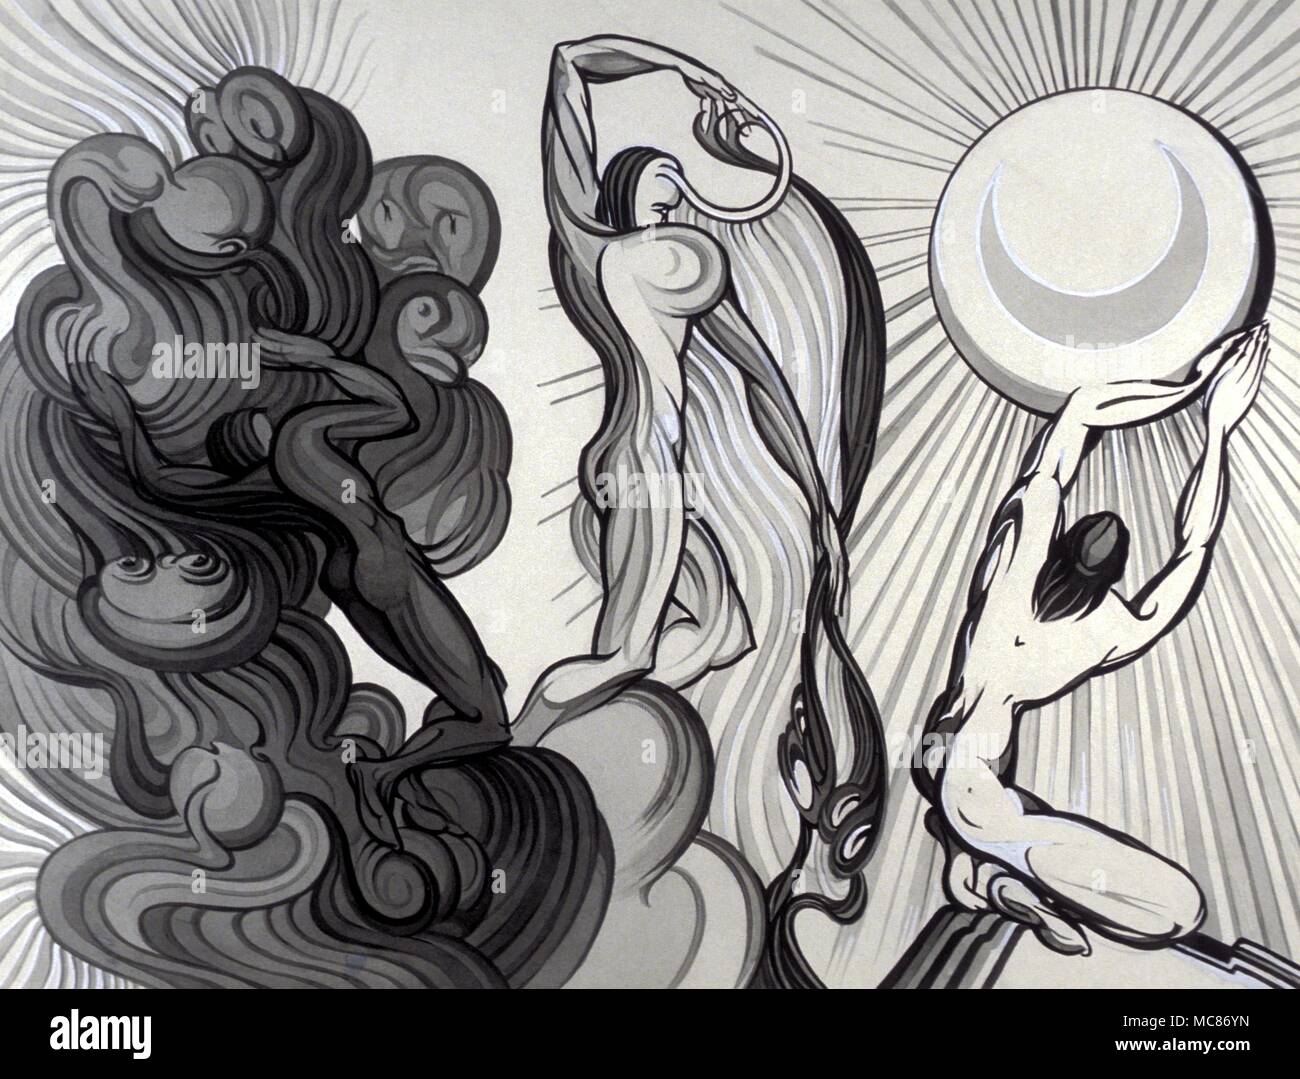 'Cabale la première heure de la nuit' - illustration de cabalistiques juive légende, par Fay Pomerance, circa 1959 Banque D'Images